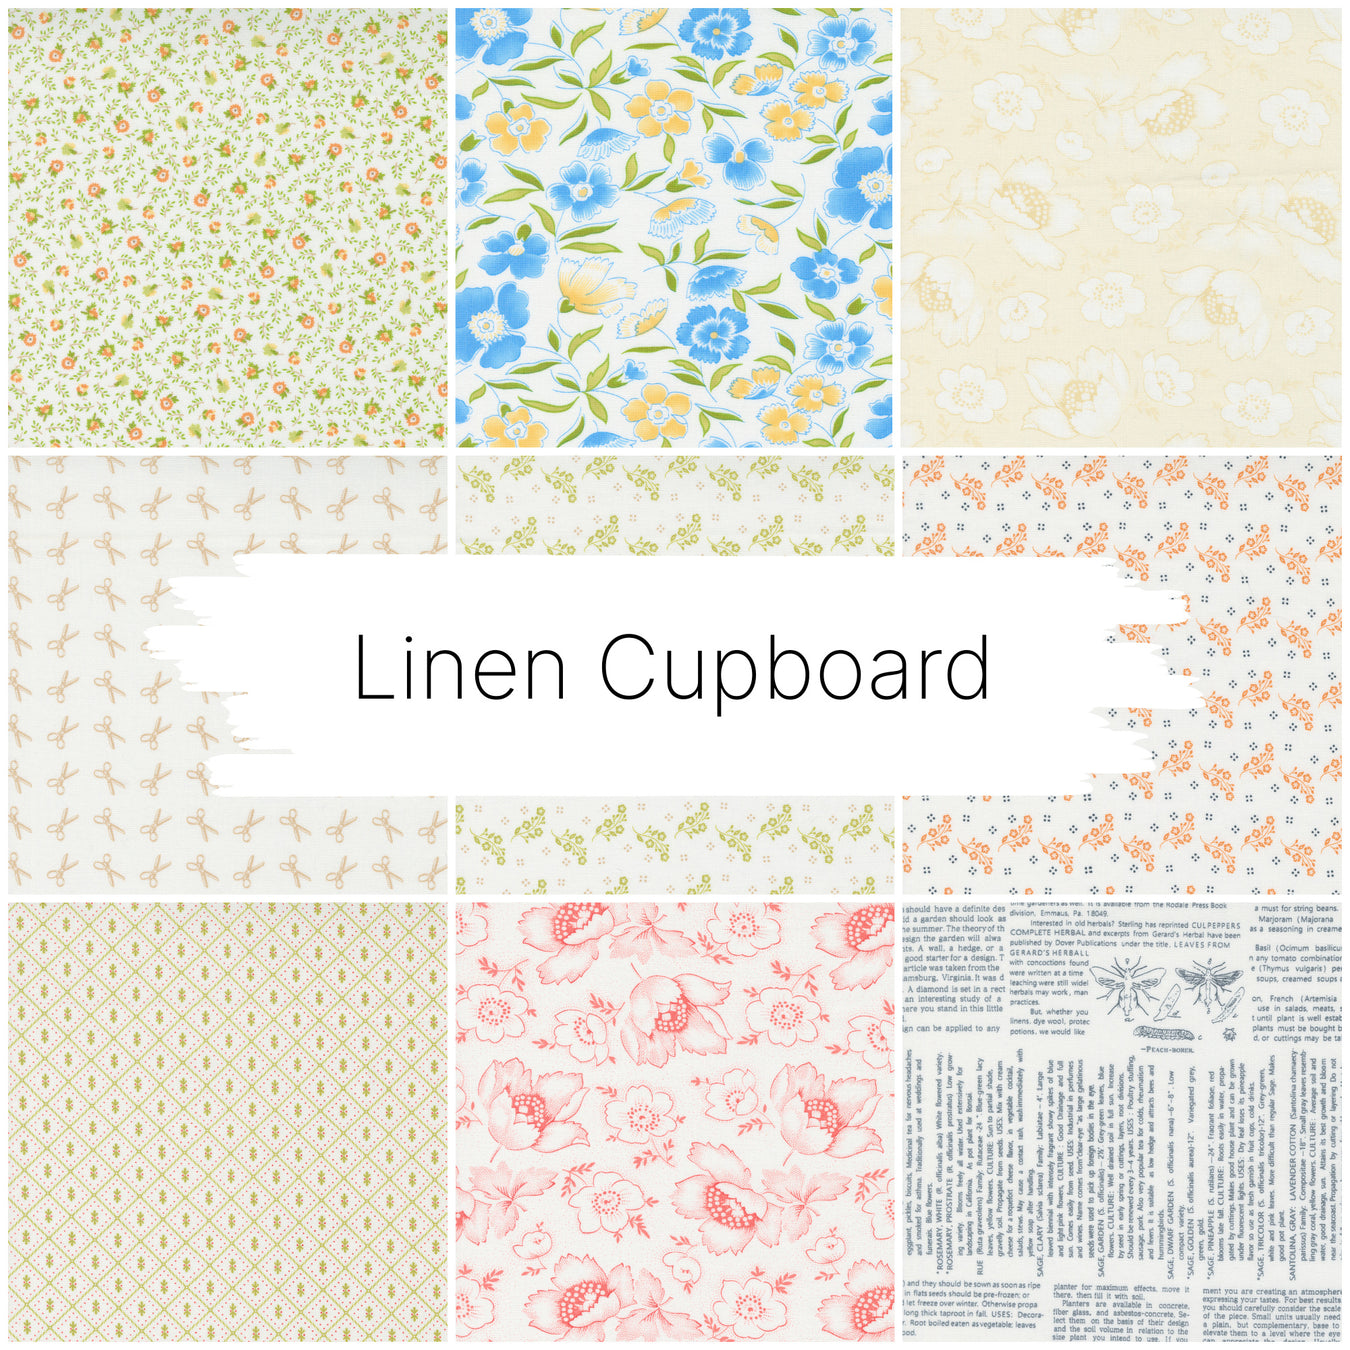 Linen Cupboard